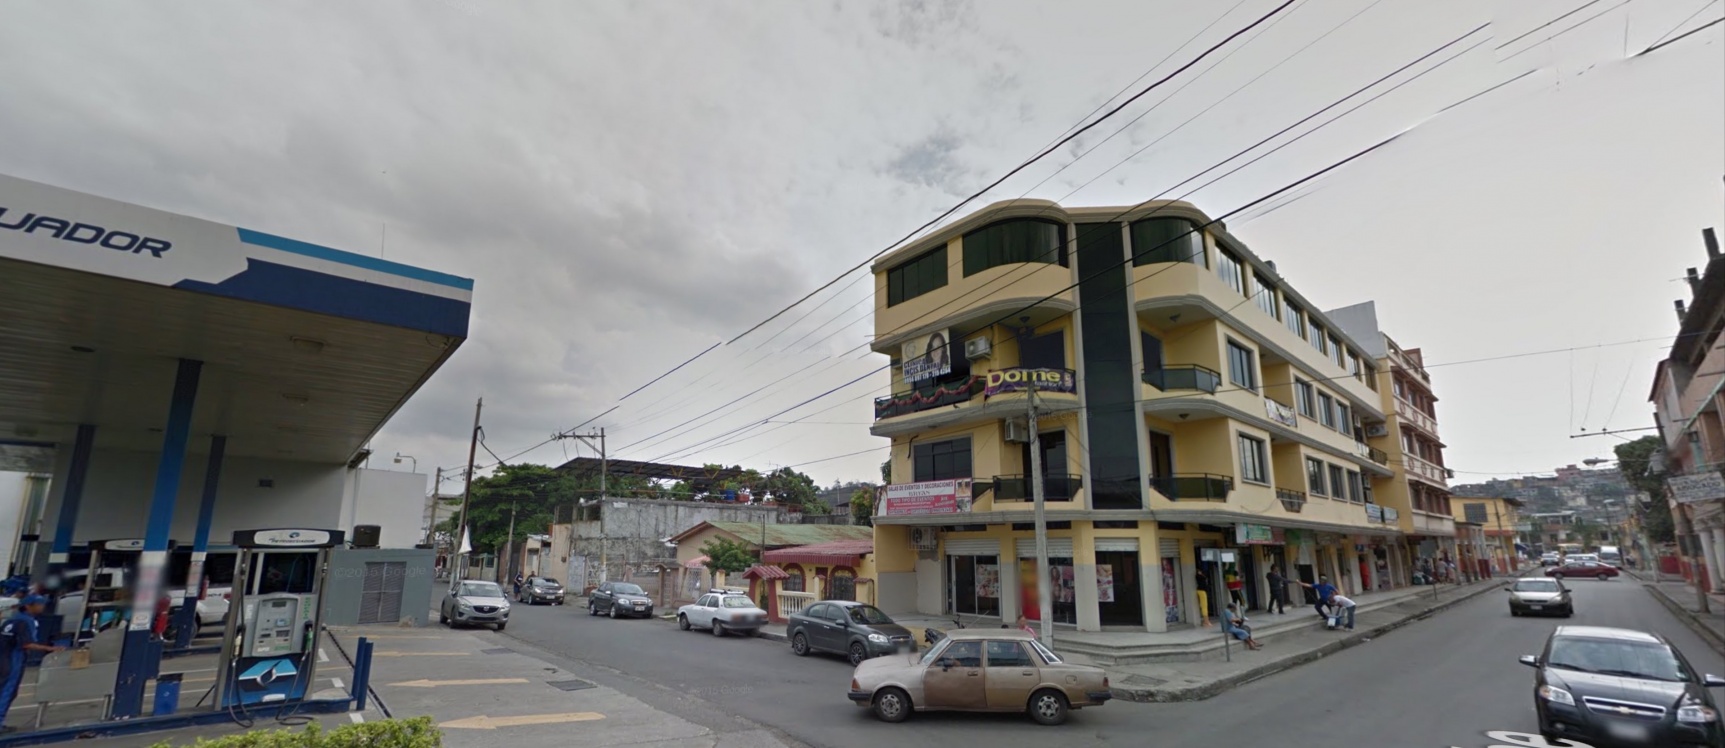 GeoBienes - Edificio entero en venta con locales comerciales en Durán - Plusvalia Guayaquil Casas de venta y alquiler Inmobiliaria Ecuador